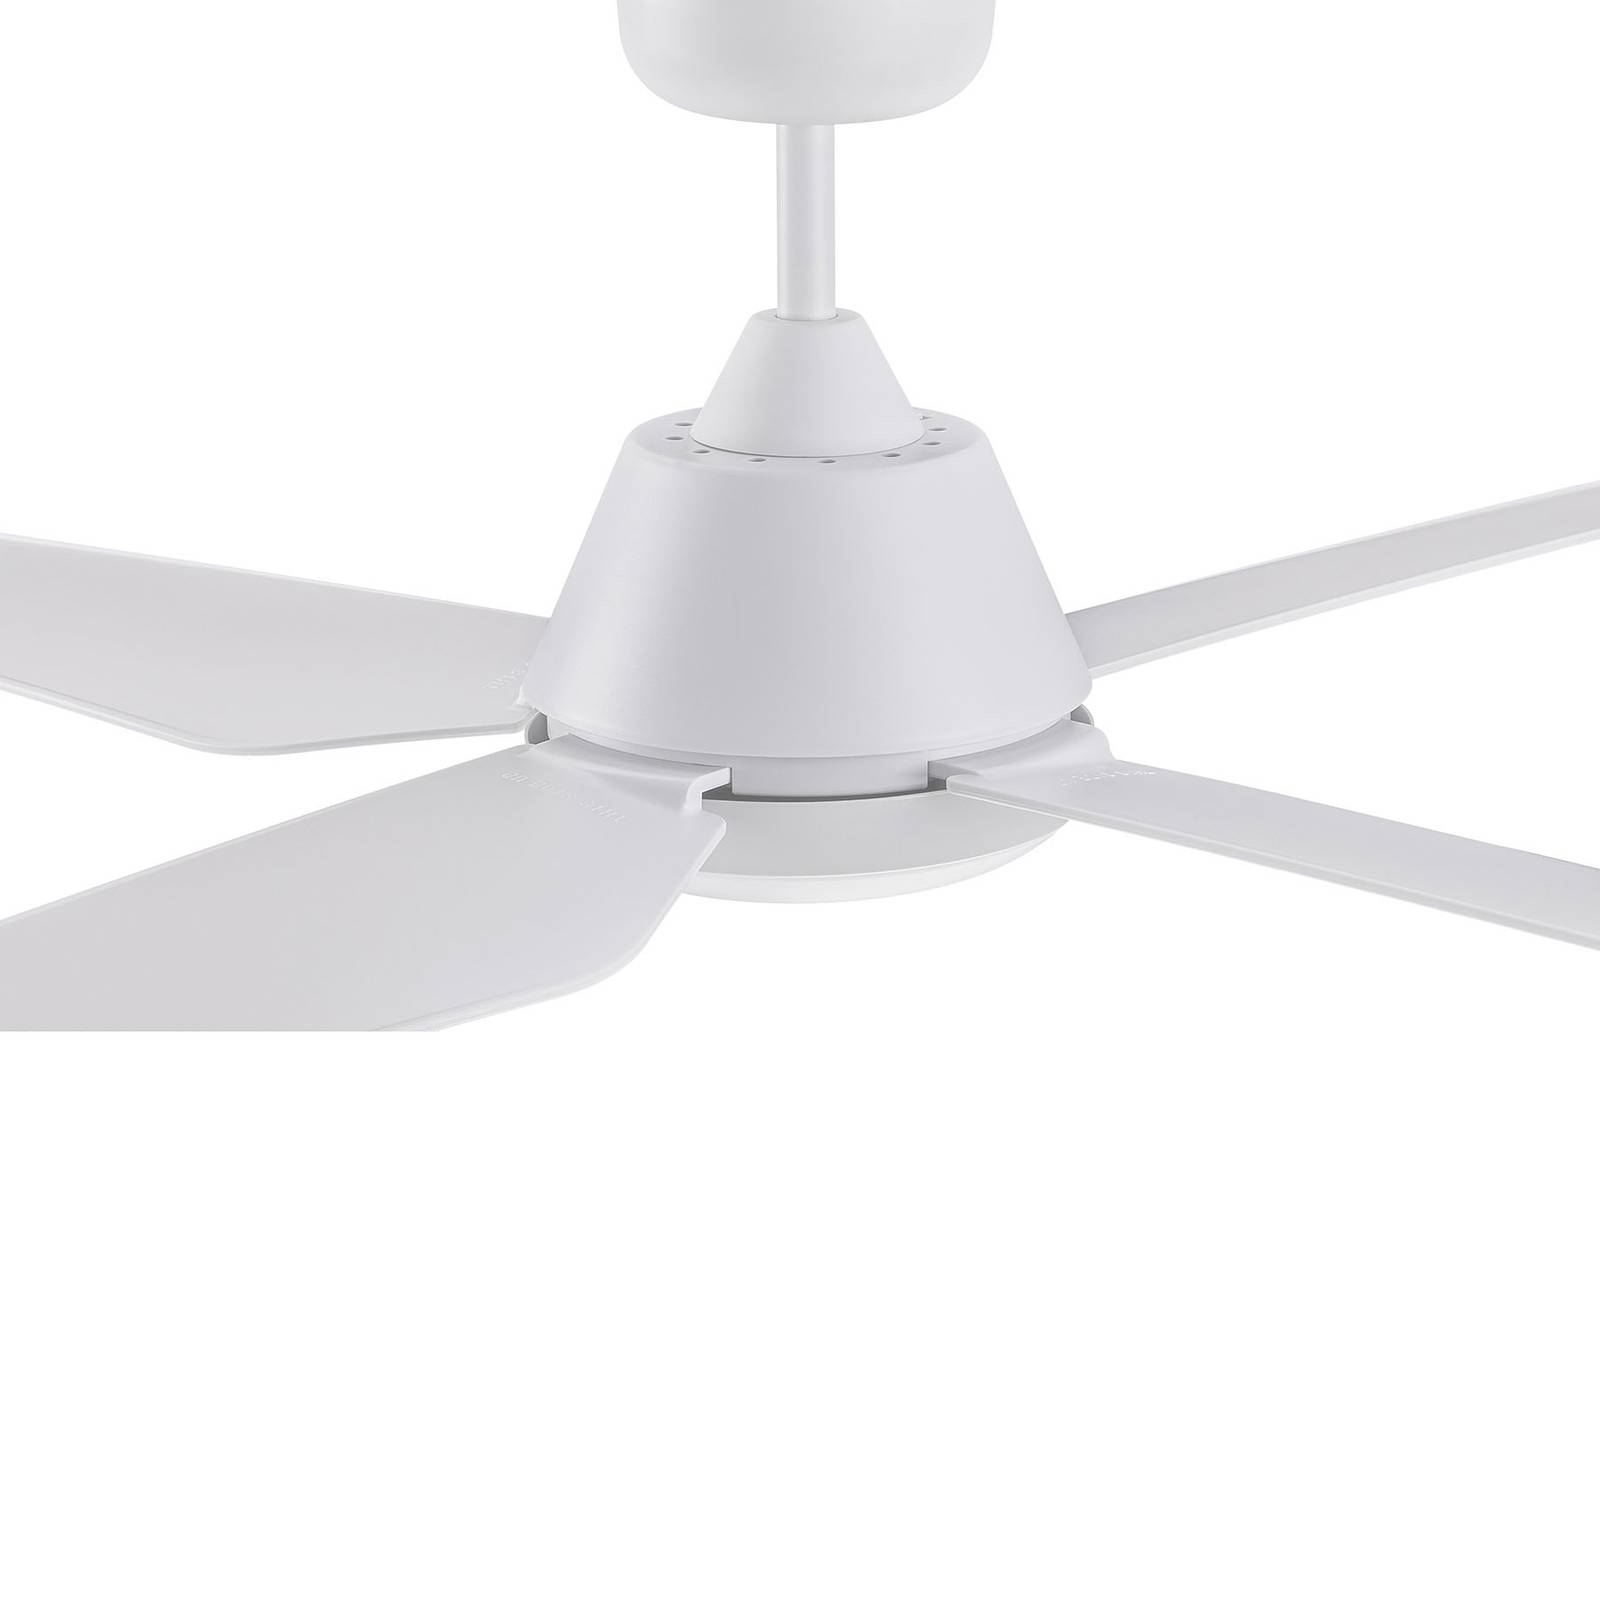 Image of Beacon Lighting Ventilateur de plafond Aria à lampe LED, blanc 9333509129813